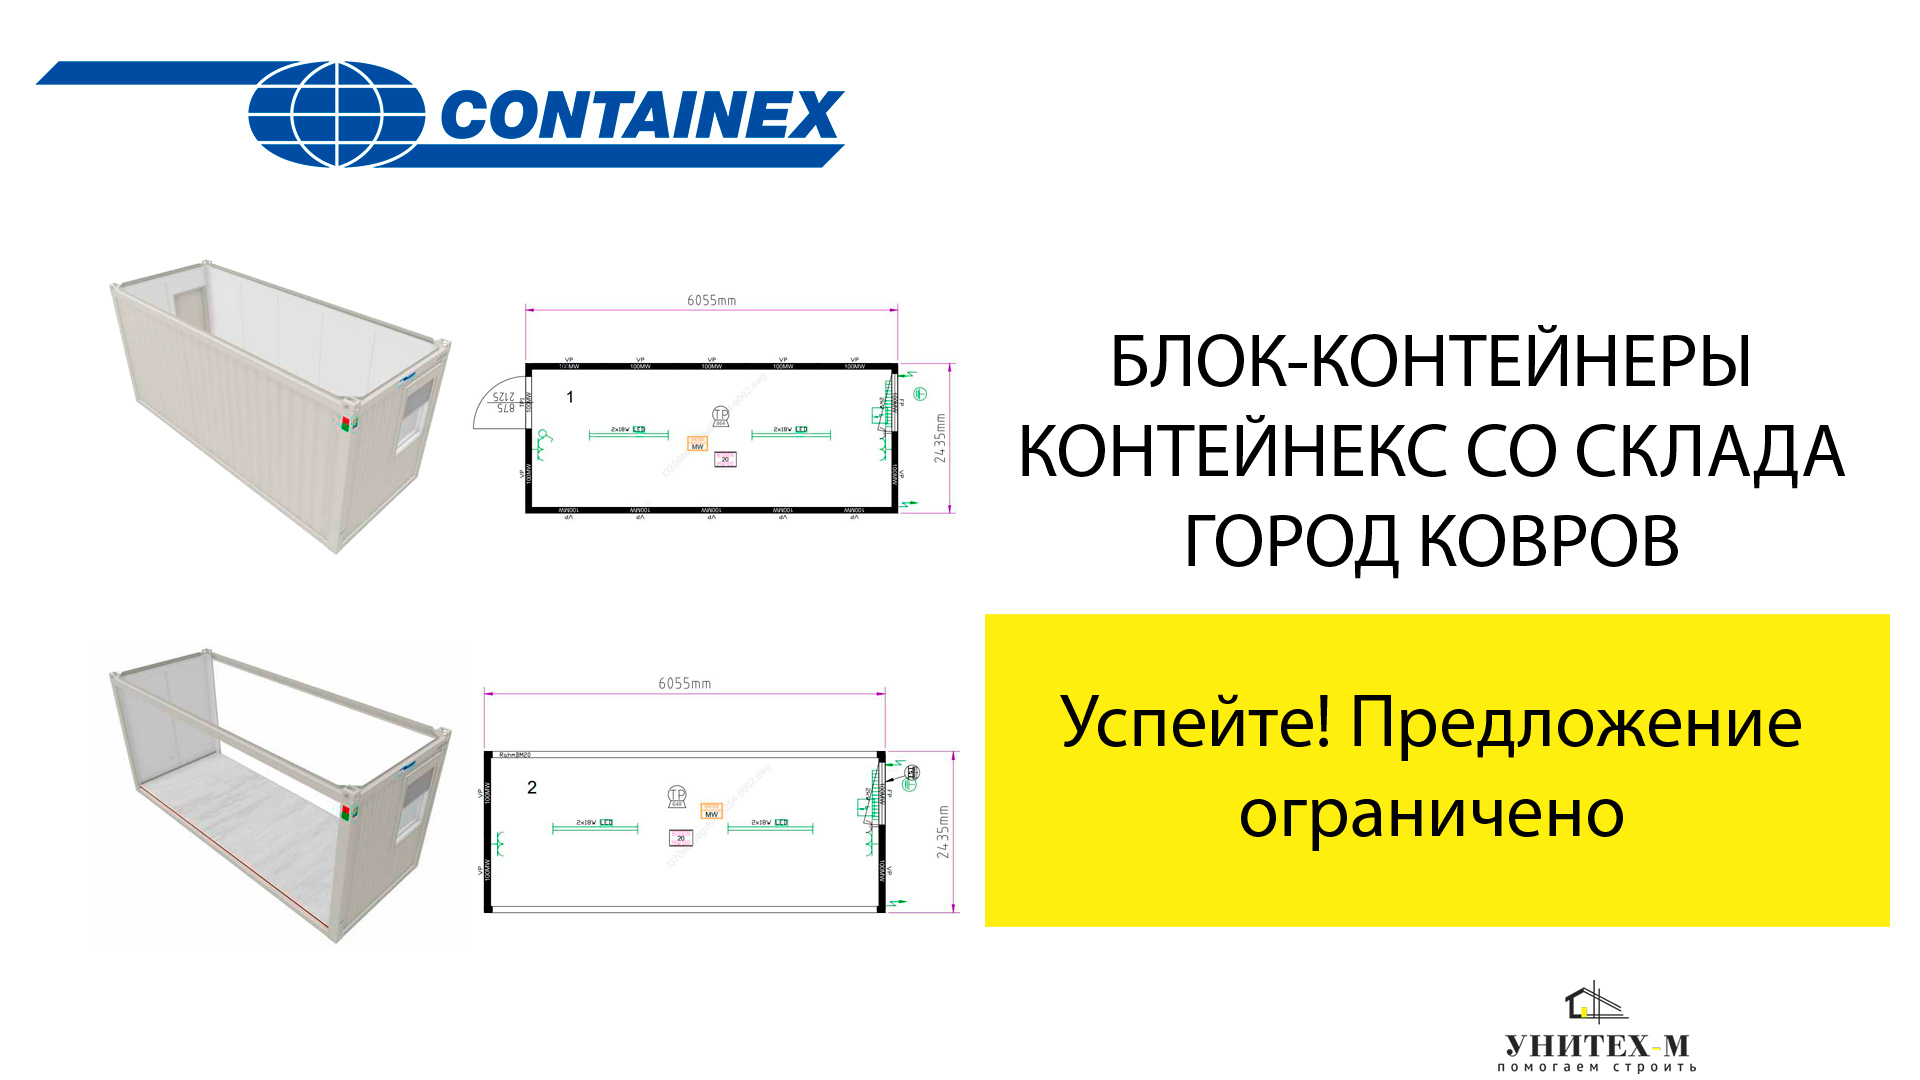 Блок-контейнеры производство Контейнекс в наличии по акции